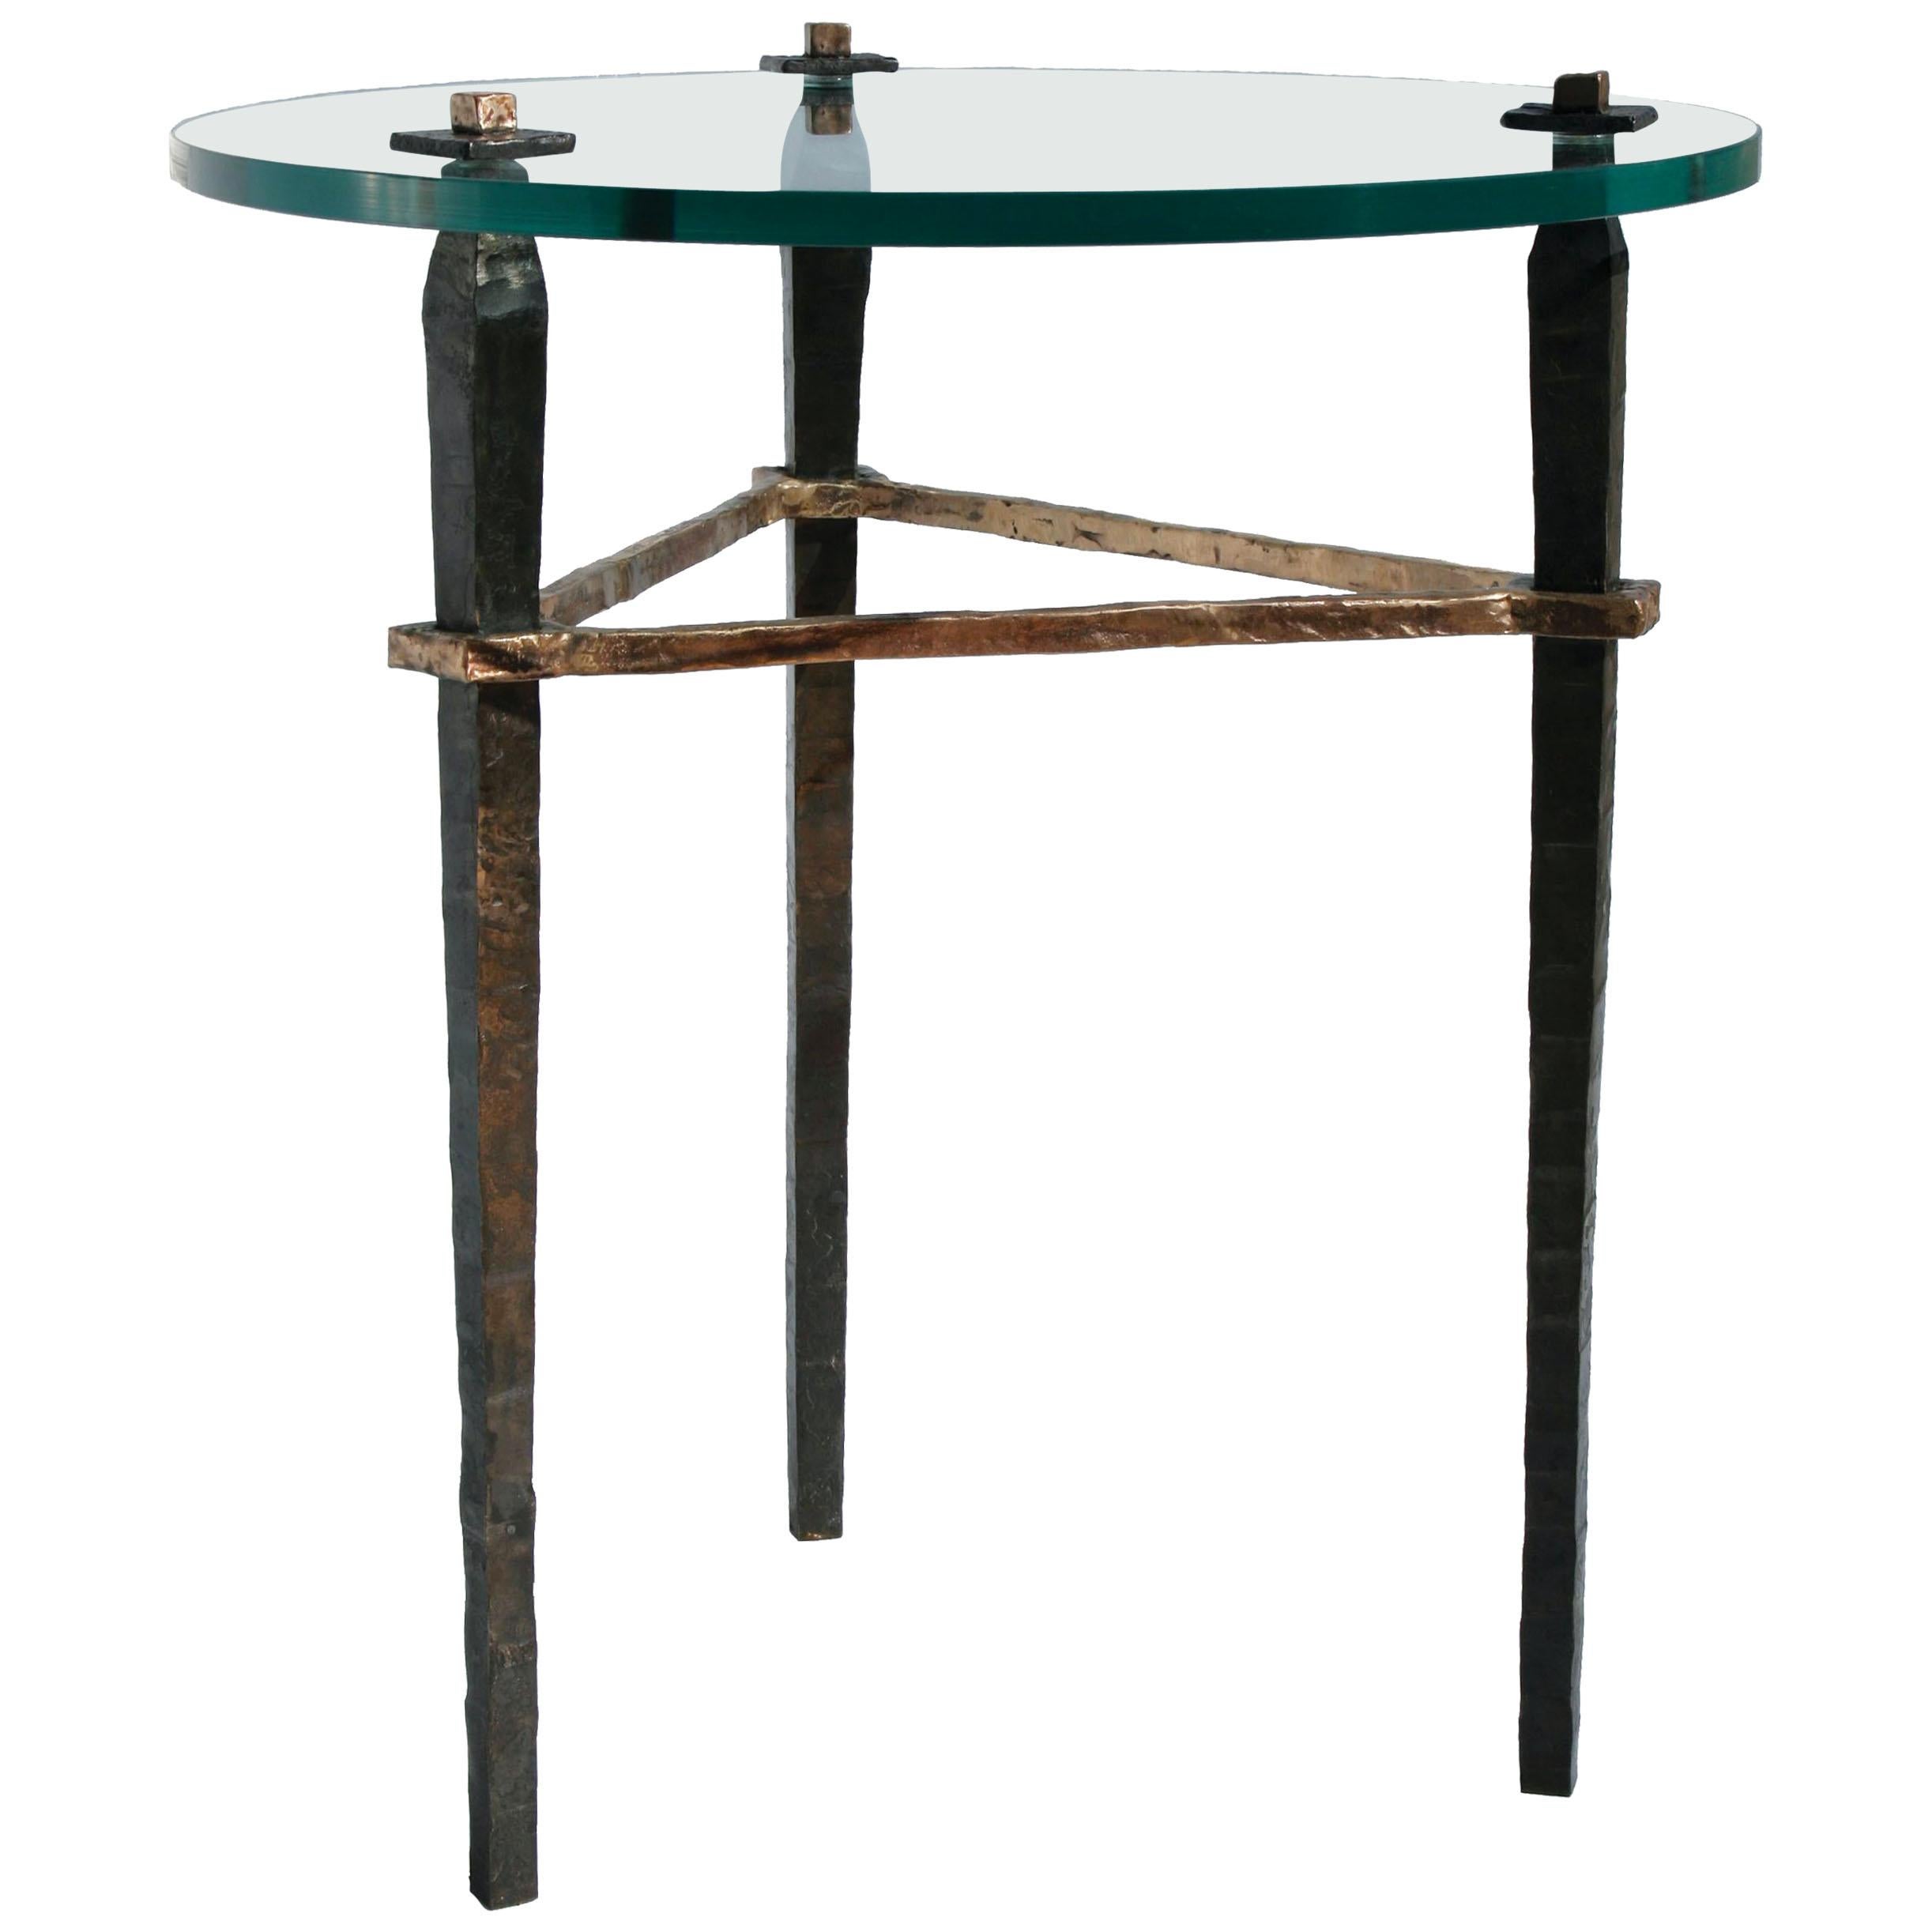 Table d'appoint en bronze avec plateau rond en verre